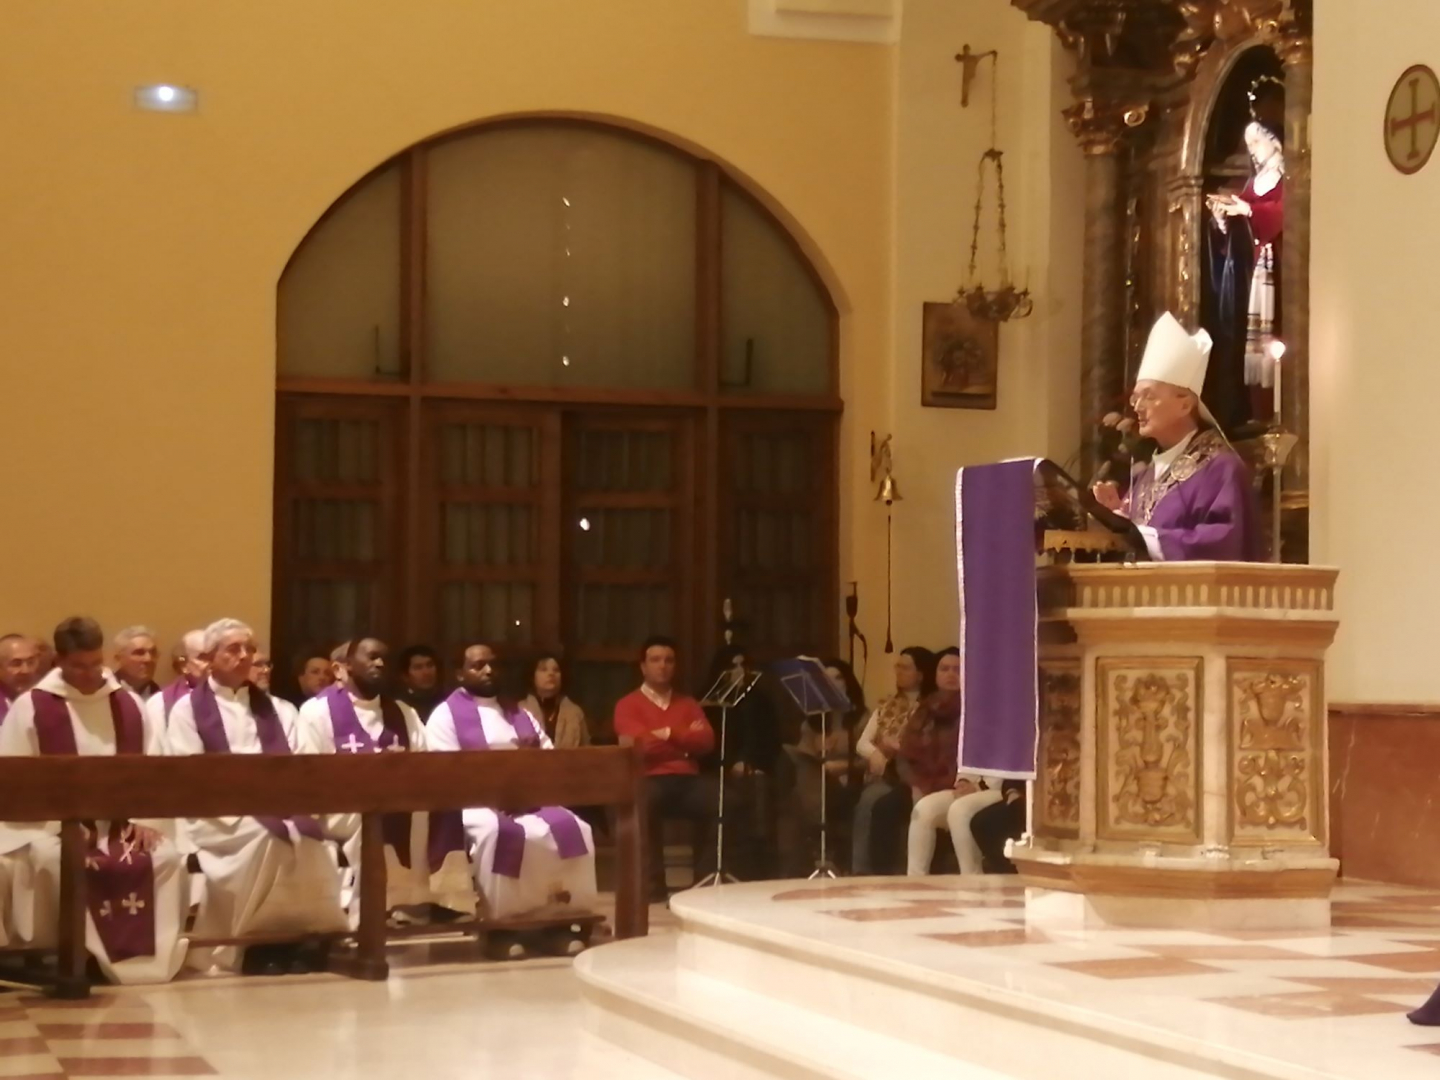 El obispo presidió la ceremonia de apertura de las asambleas sinodales ayer domingo//Imagen: Diócesis de Sigüenza-Guadalajara